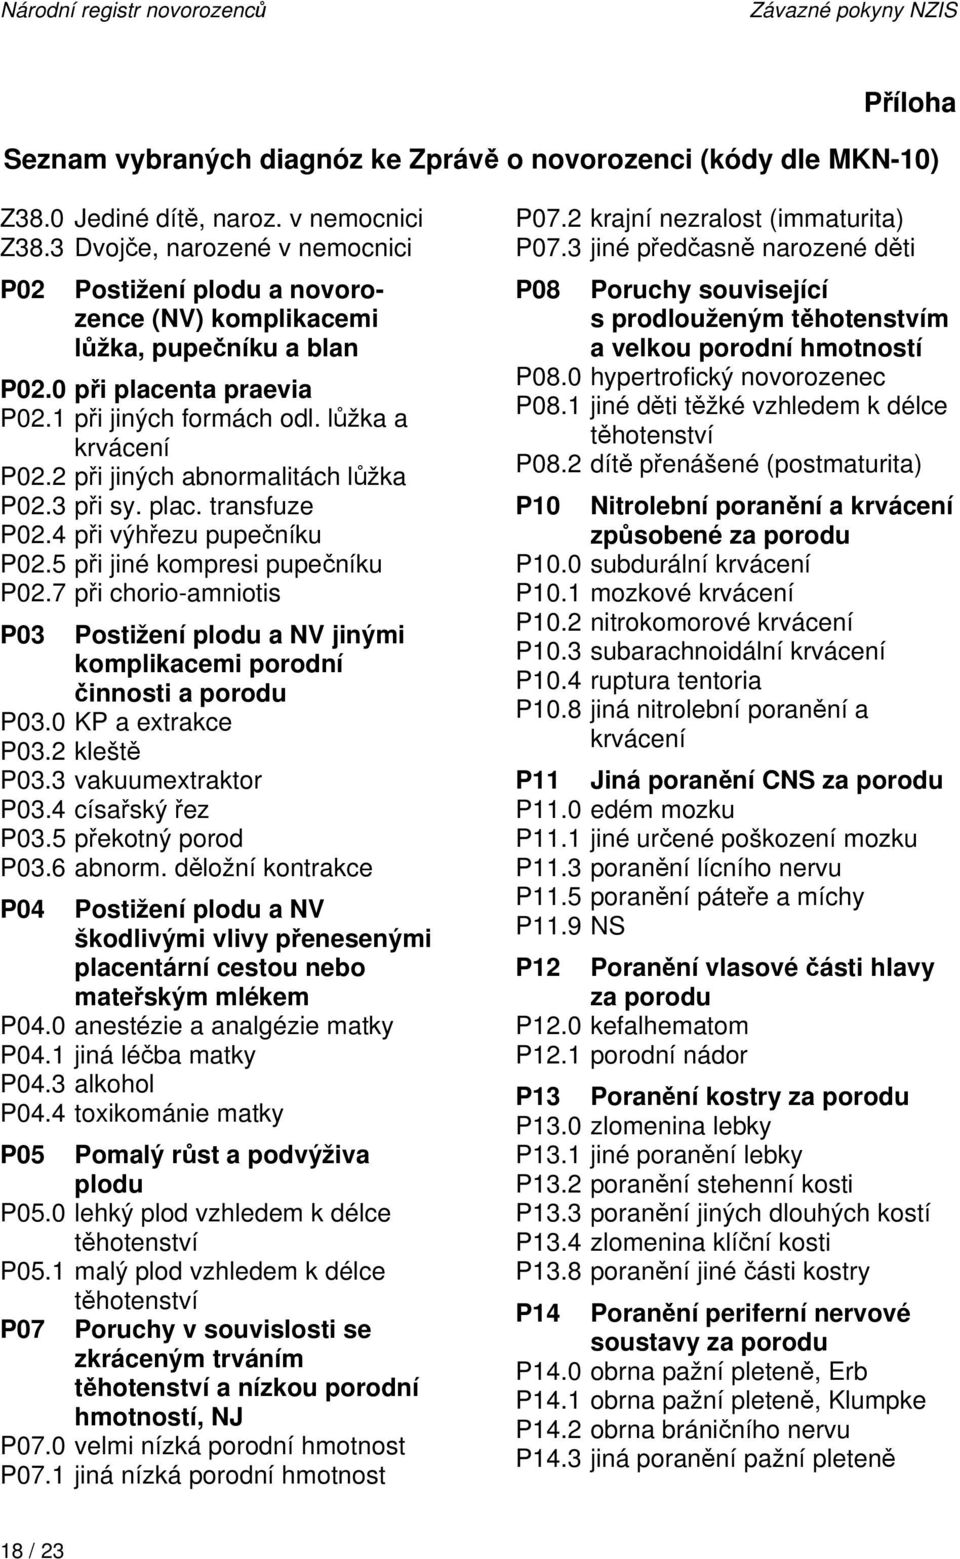 2 při jiných abnormalitách lůžka P02.3 při sy. plac. transfuze P02.4 při výhřezu pupečníku P02.5 při jiné kompresi pupečníku P02.